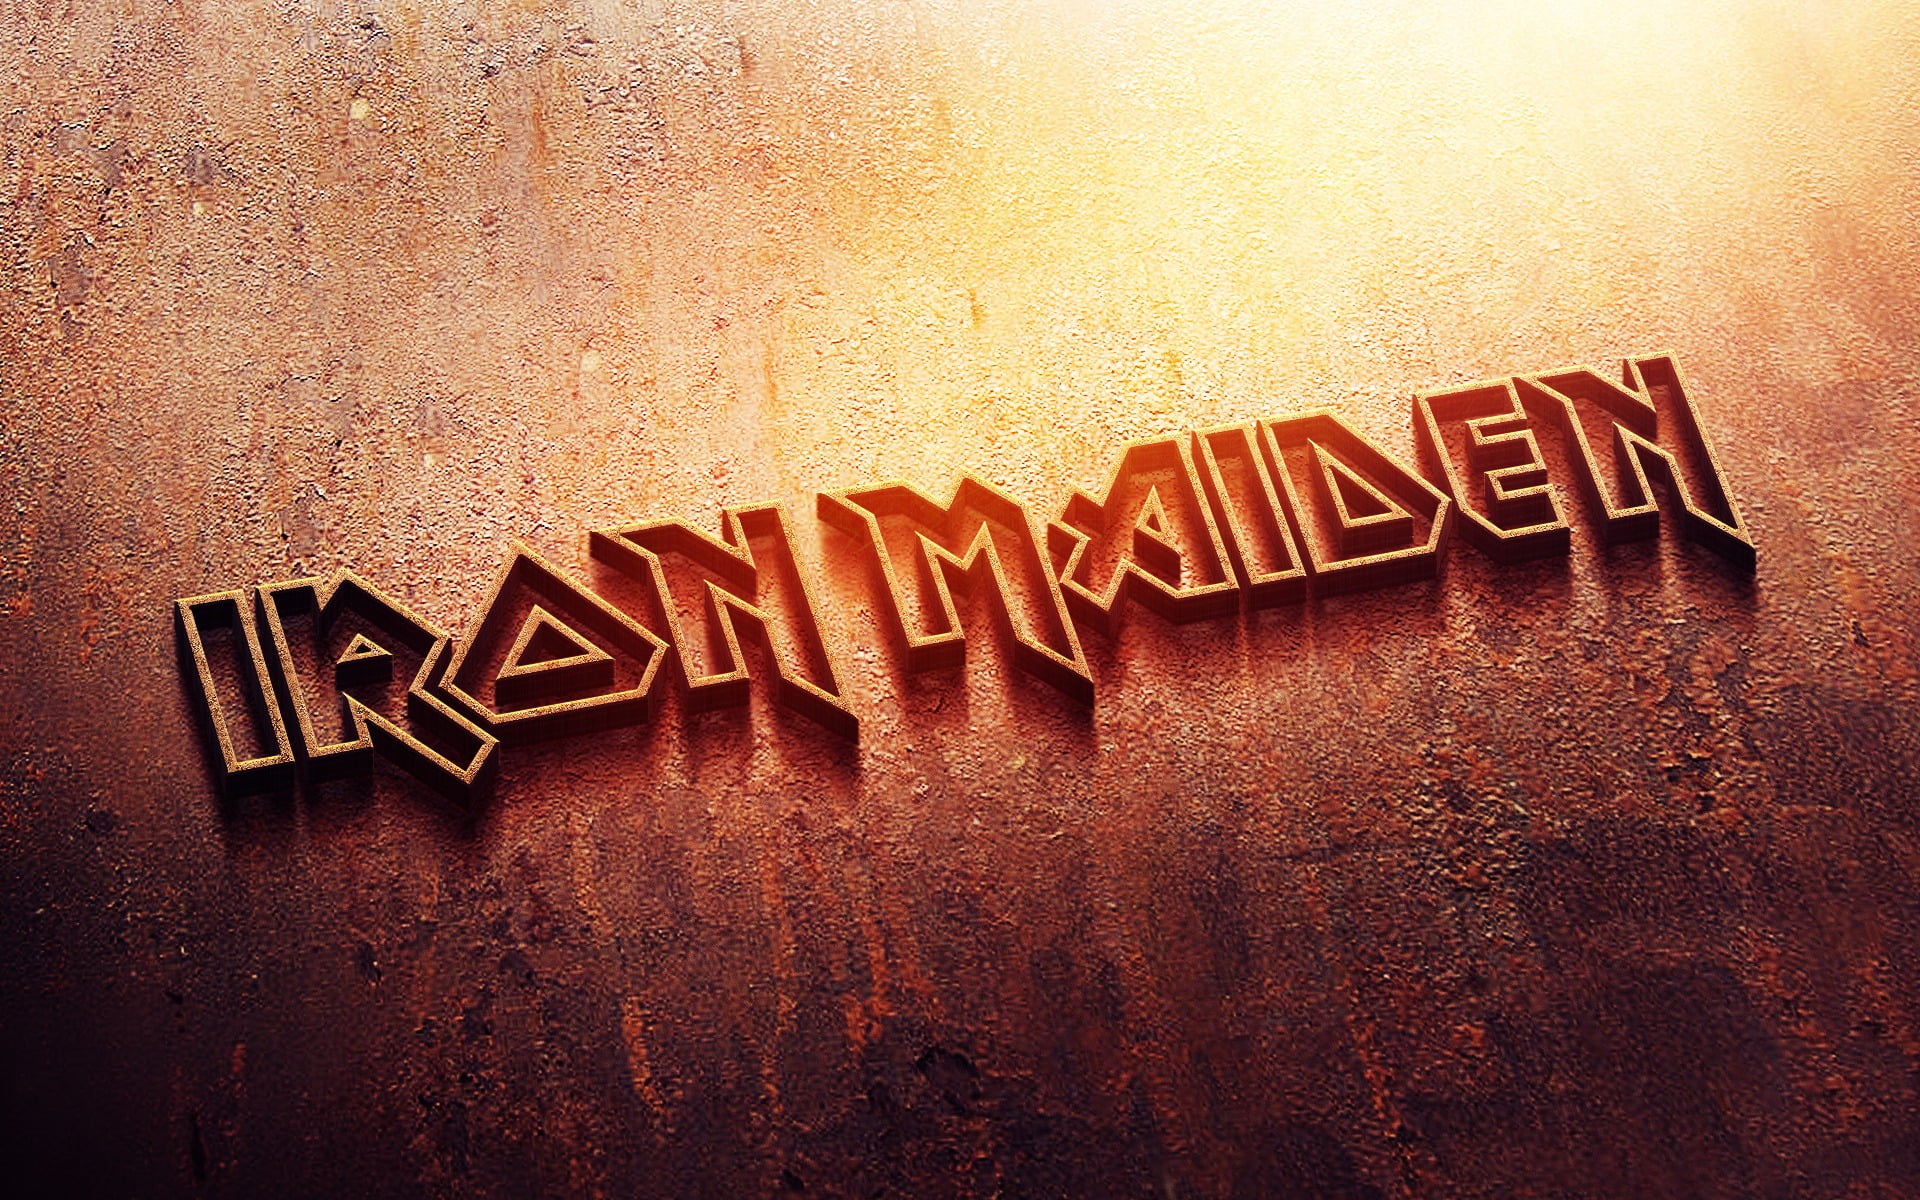 Iron Maiden digital wallpaper, metal, logo, rust, heavy metal